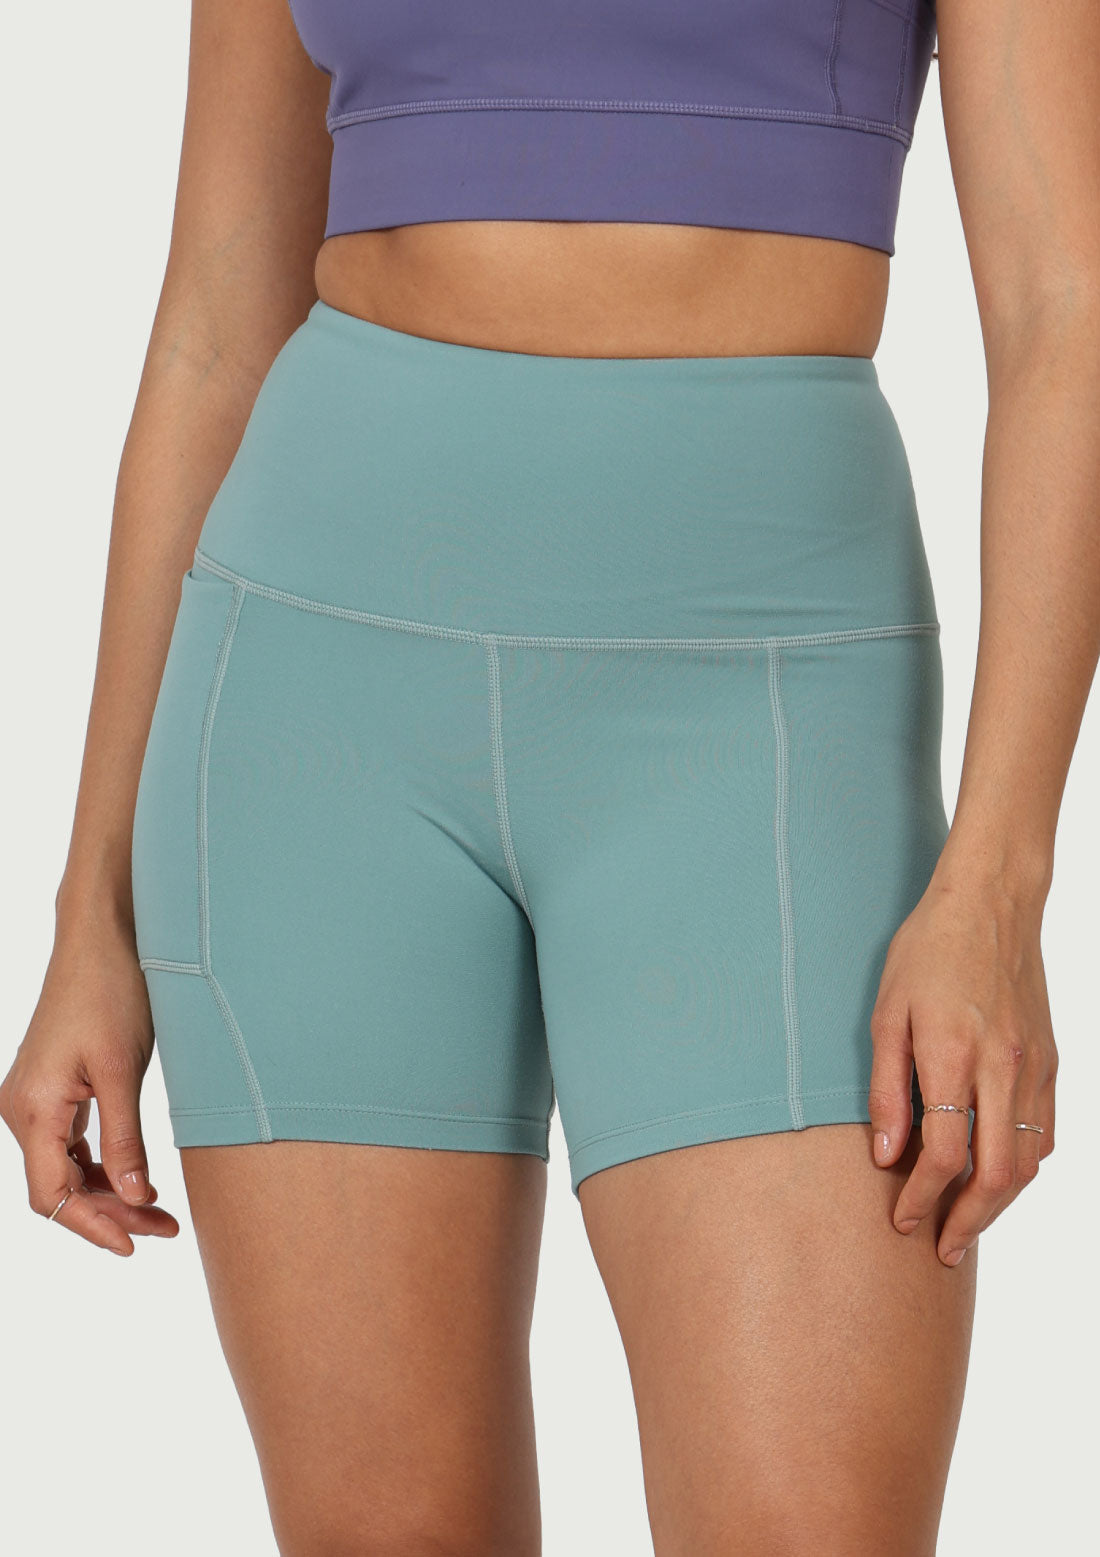 Kayla yoga shorts, Womens hot yoga shorts